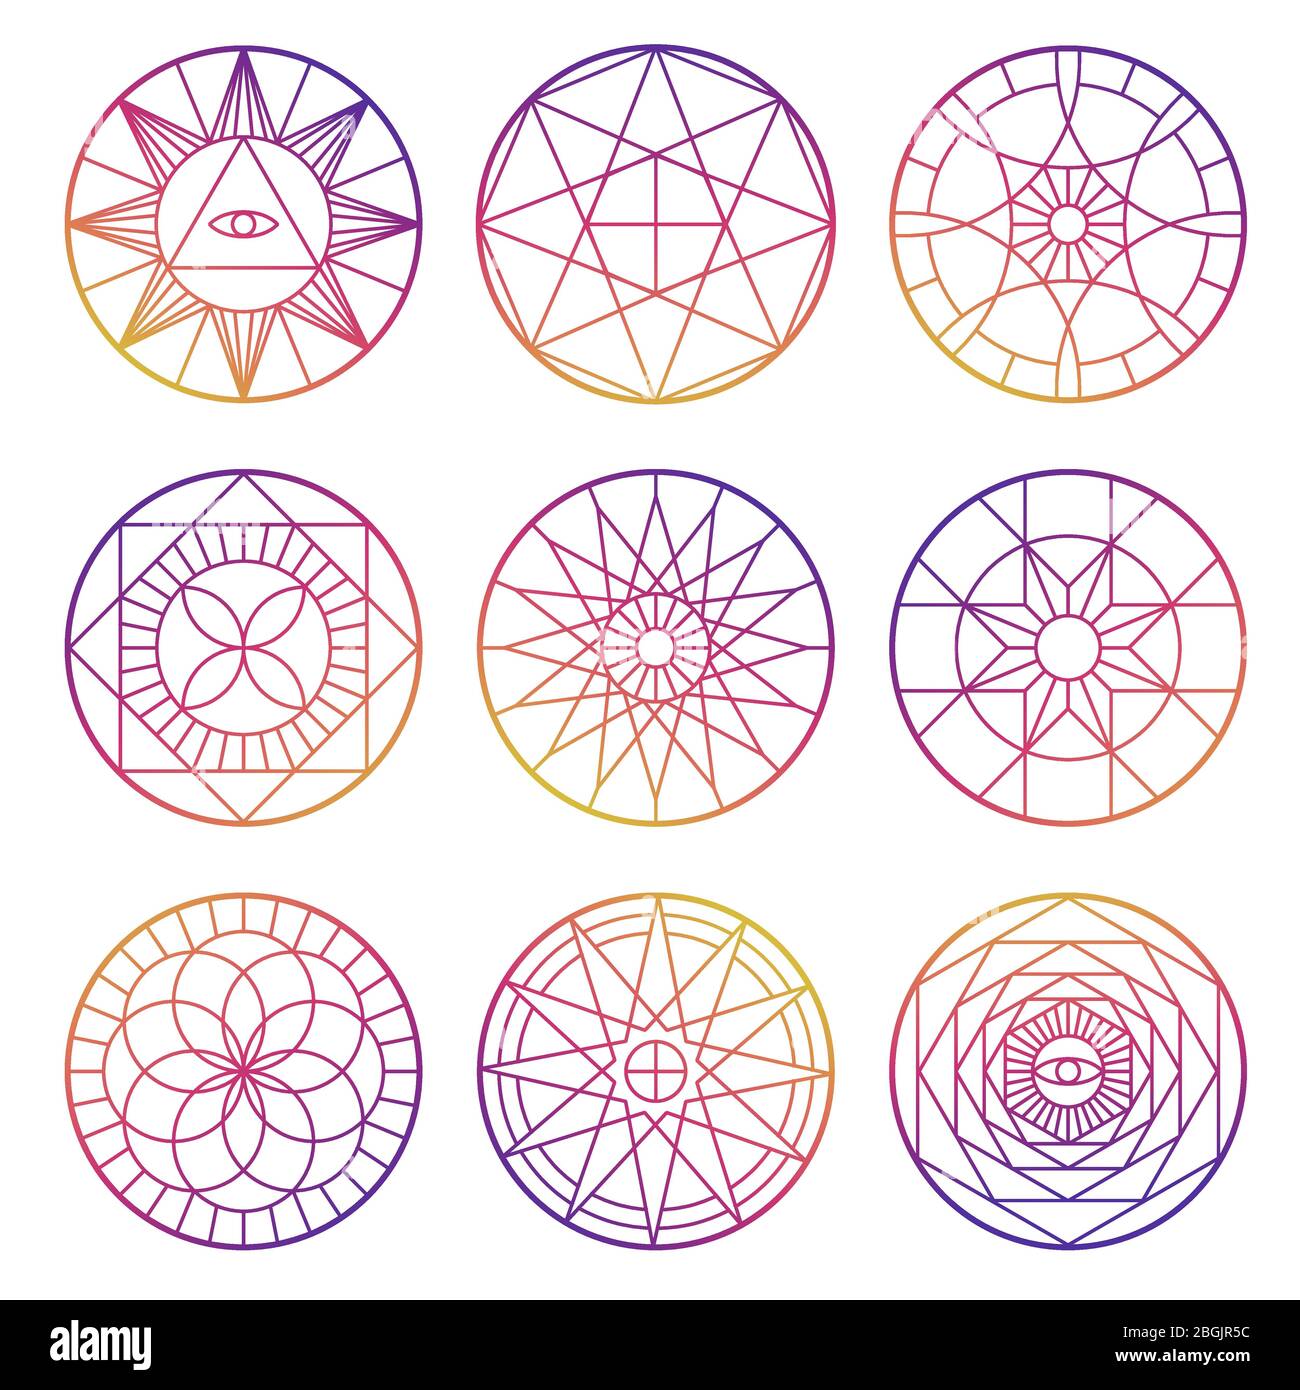 Best Coolest Geometric Tattoo Designs  Circletattooscom